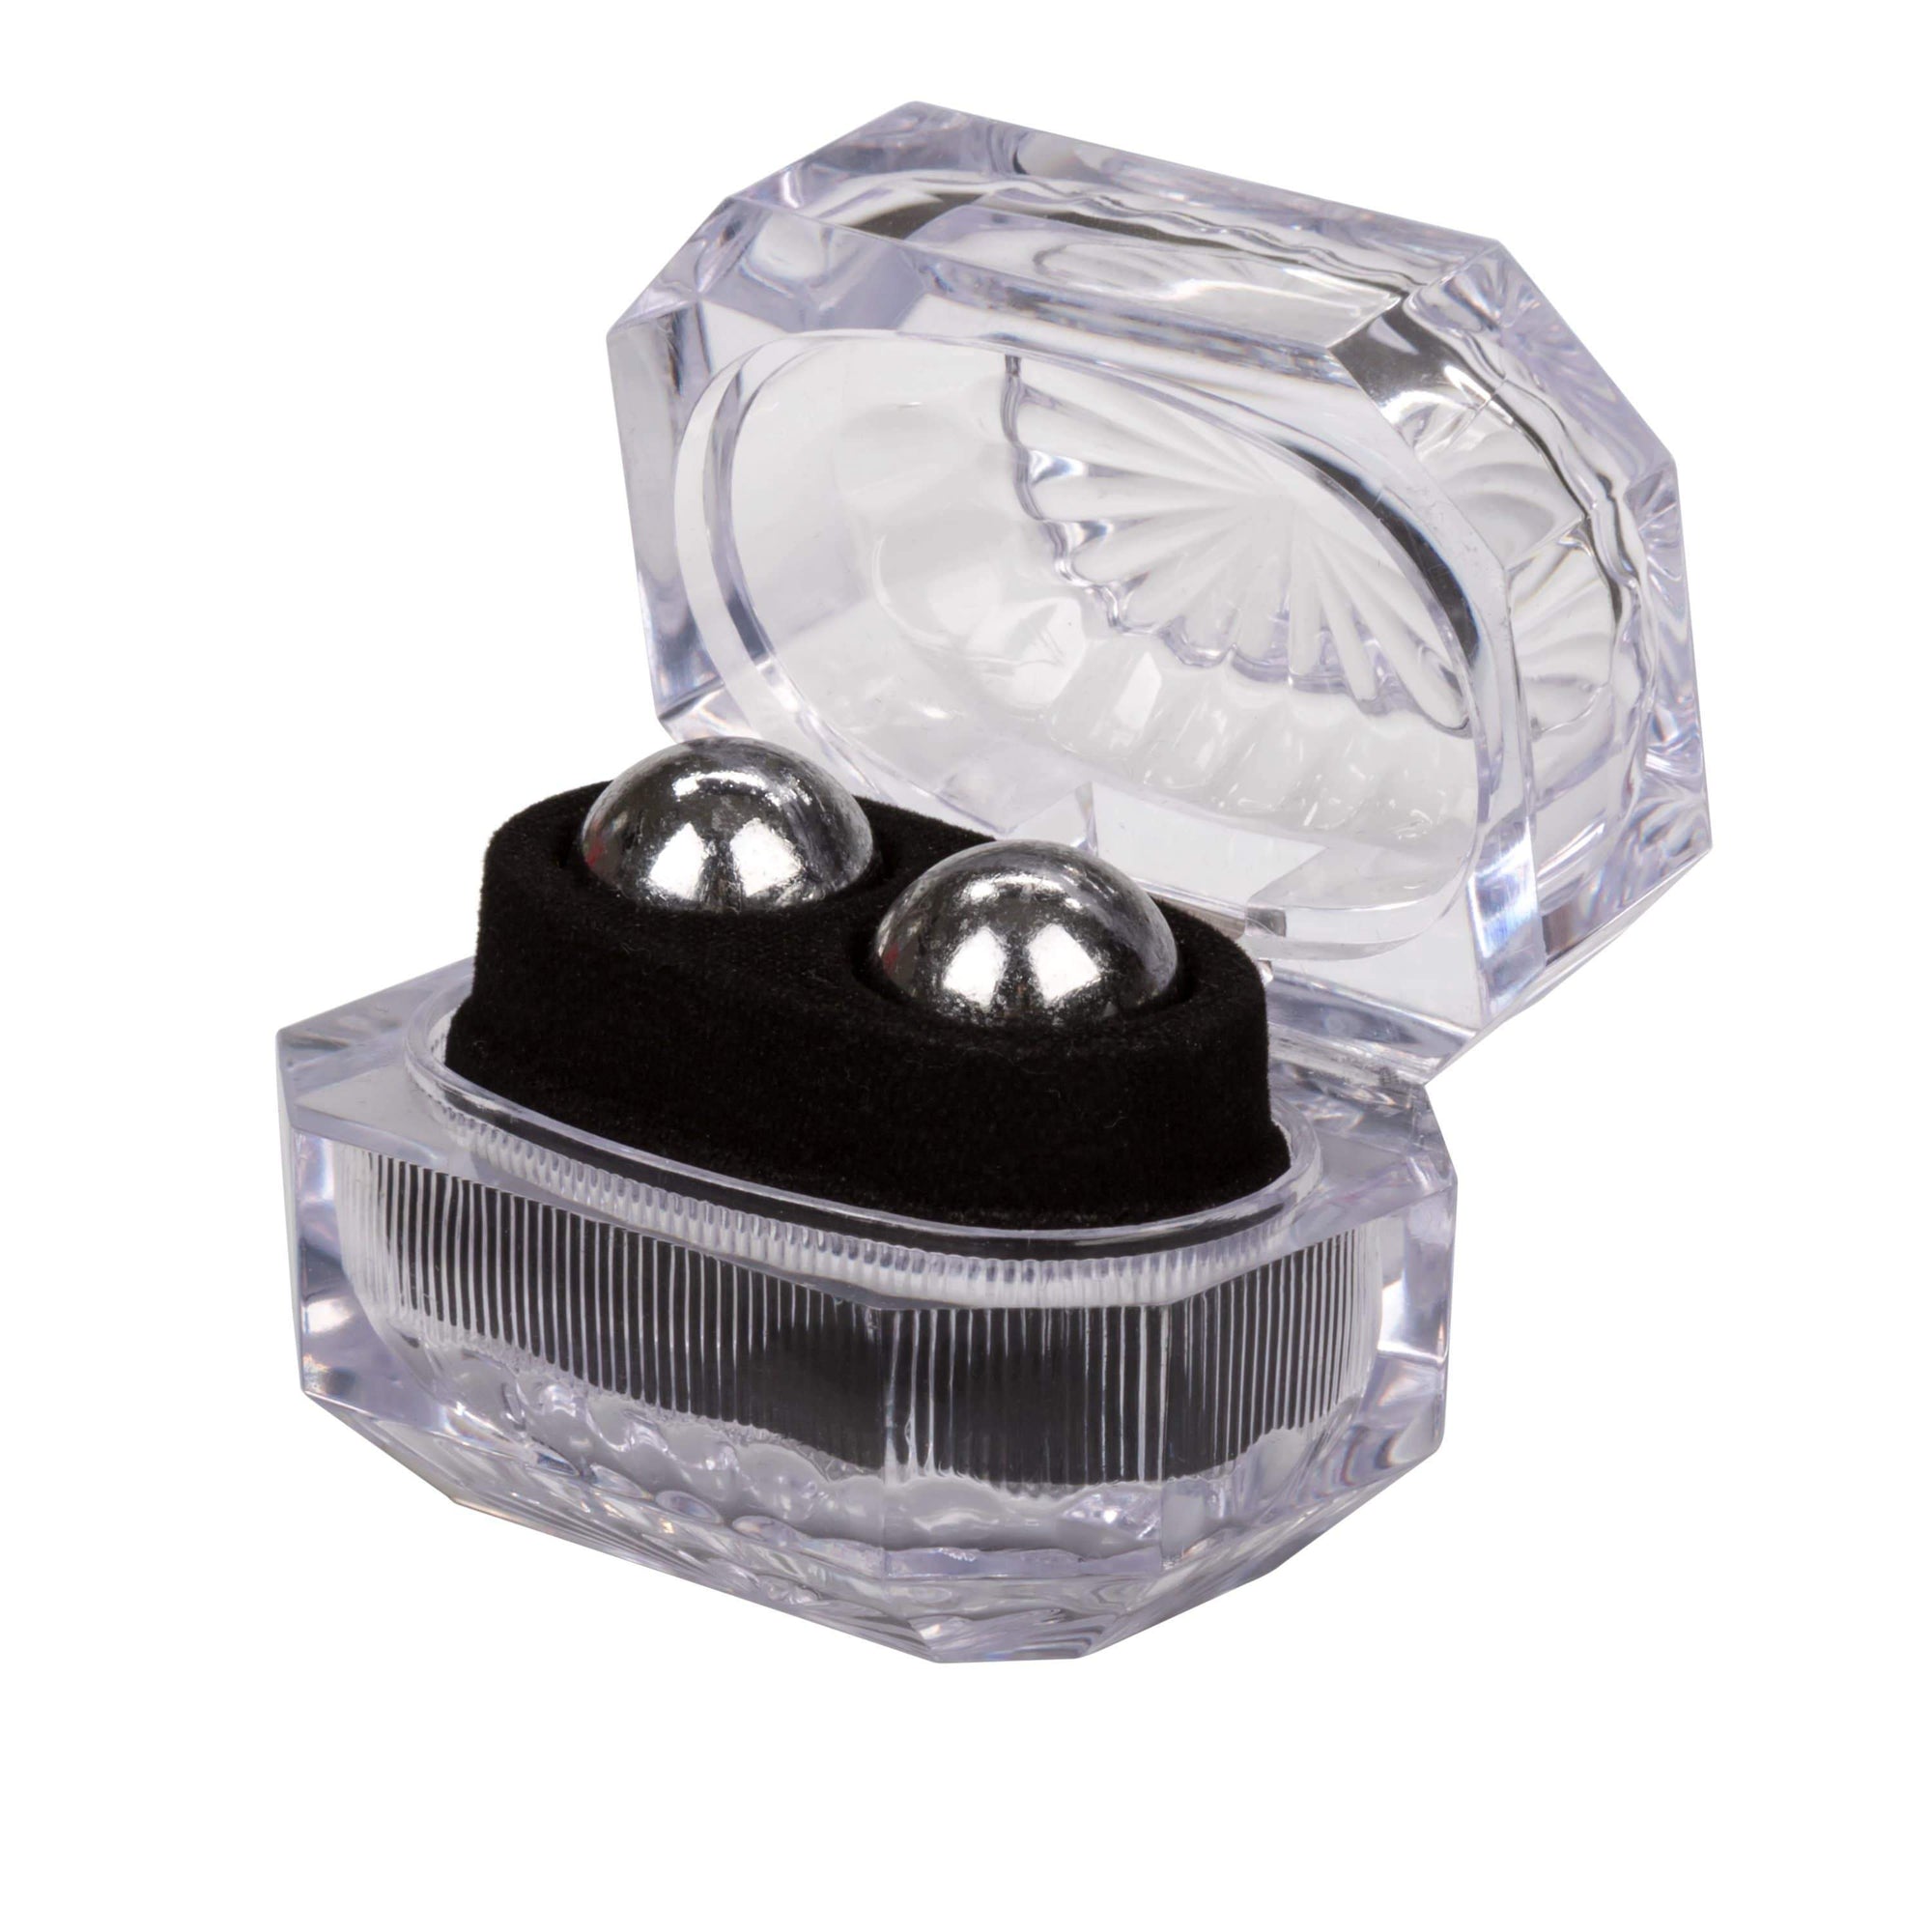 California Exotics - Silver Kegel Balls In Presentation Box (Silver) Kegel Balls (Non Vibration) 6946689007074 CherryAffairs